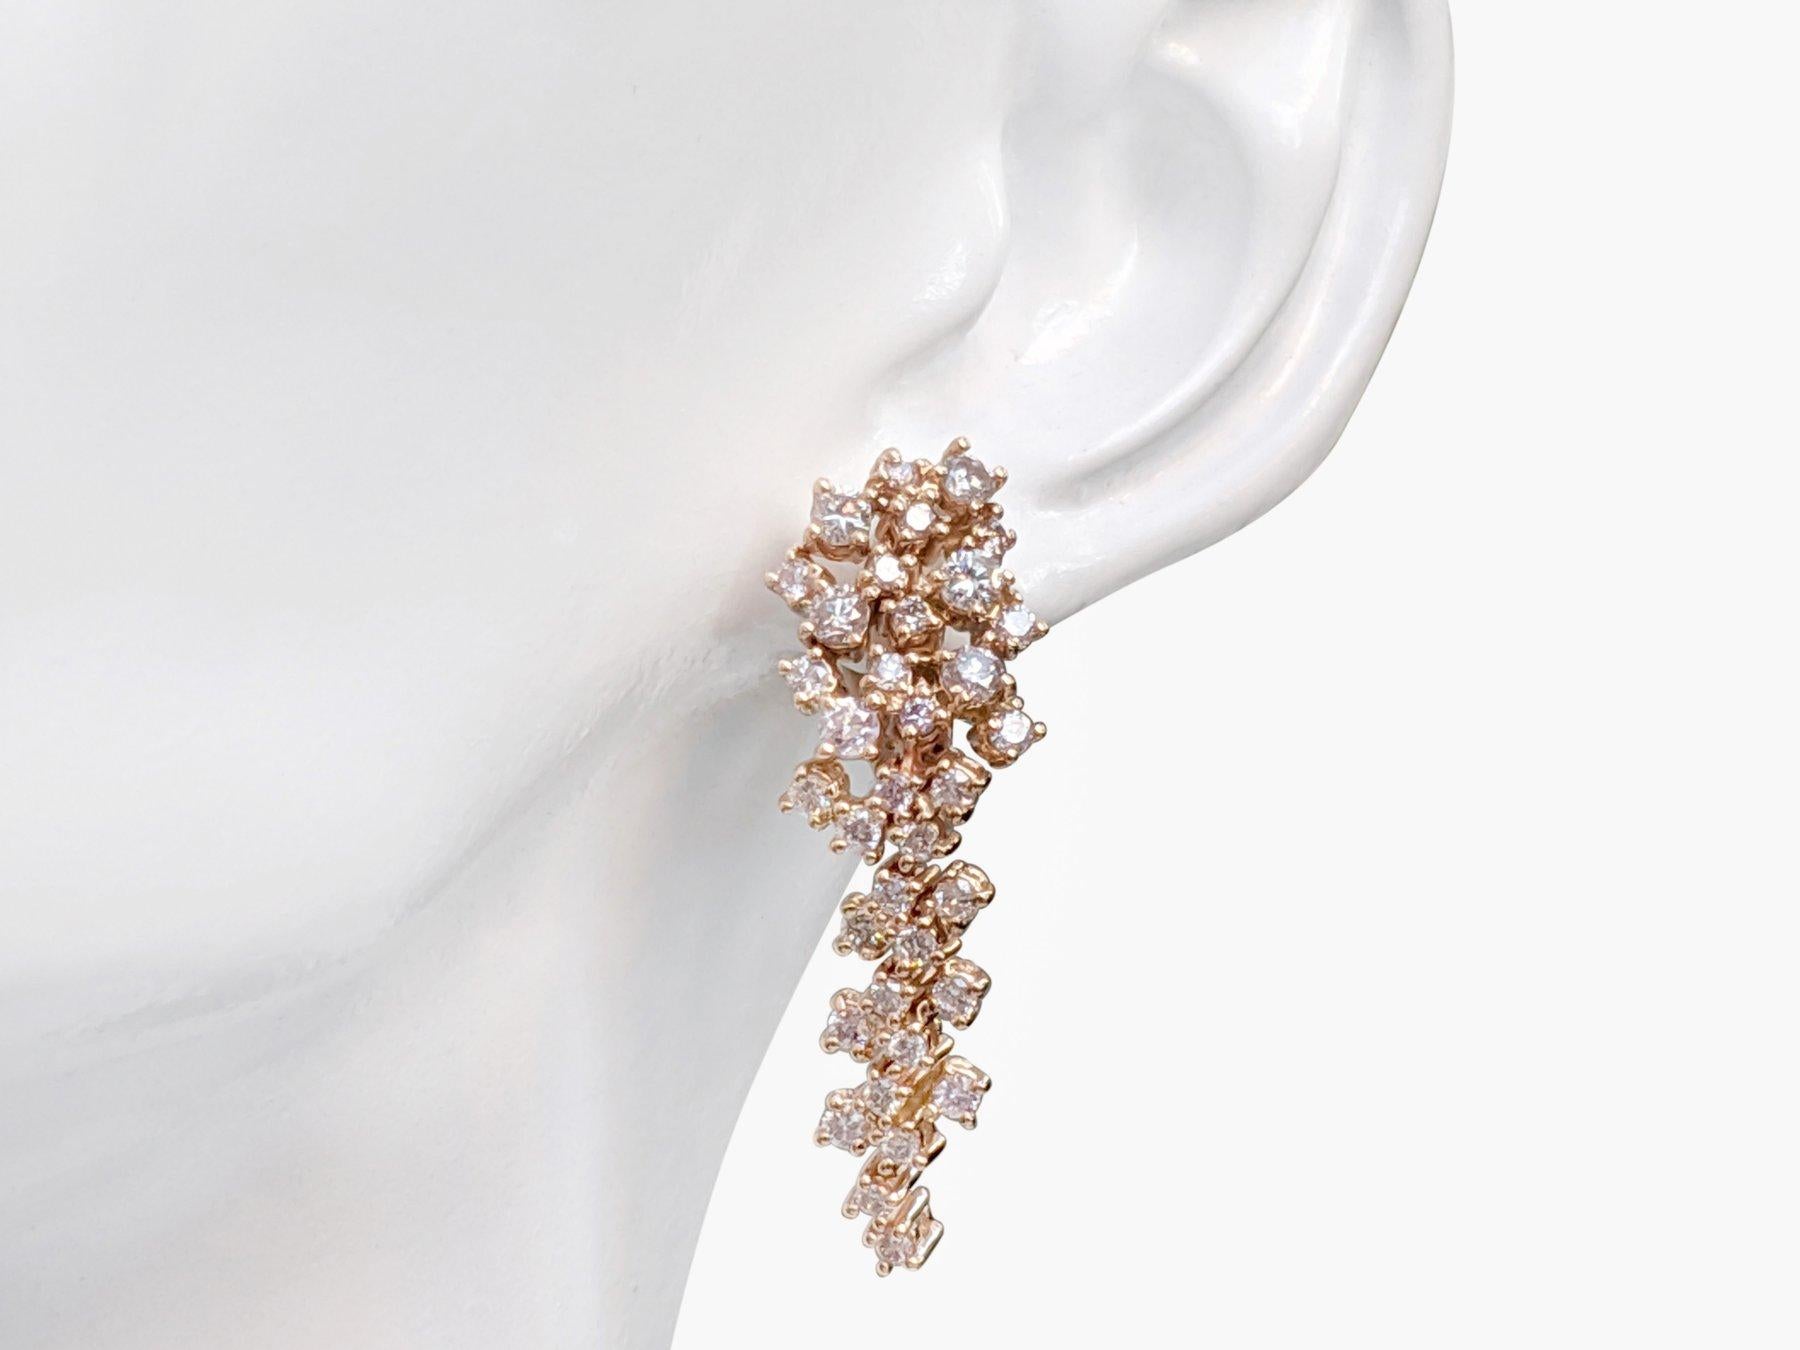 Art déco TAILLE ! NOTRE RESERVATION ! 1,50 carattw Diamants roses fantaisie - 14 carats. Or rose - Boucles d'oreilles